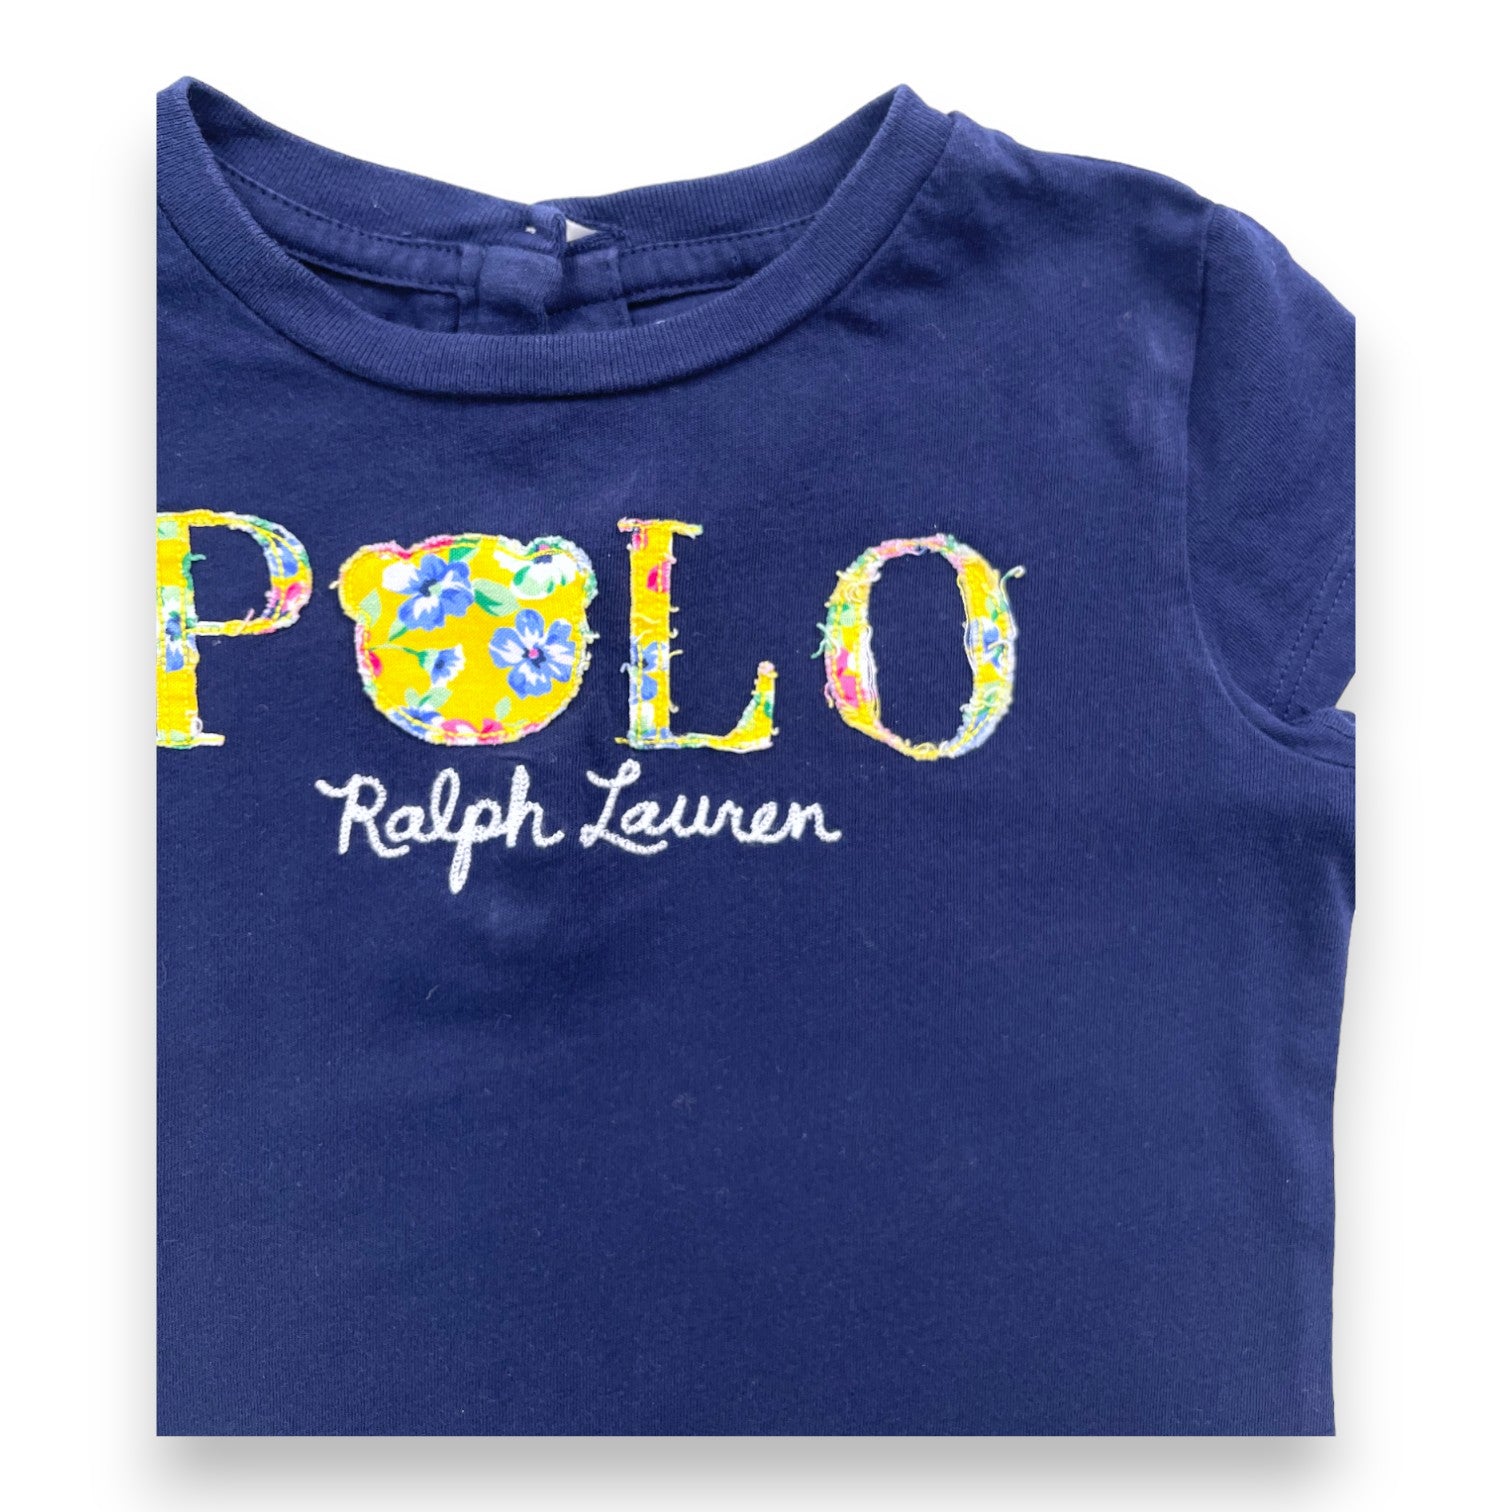 RALPH LAUREN - T shirt manches courtes bleu marine à motifs - 2 ans